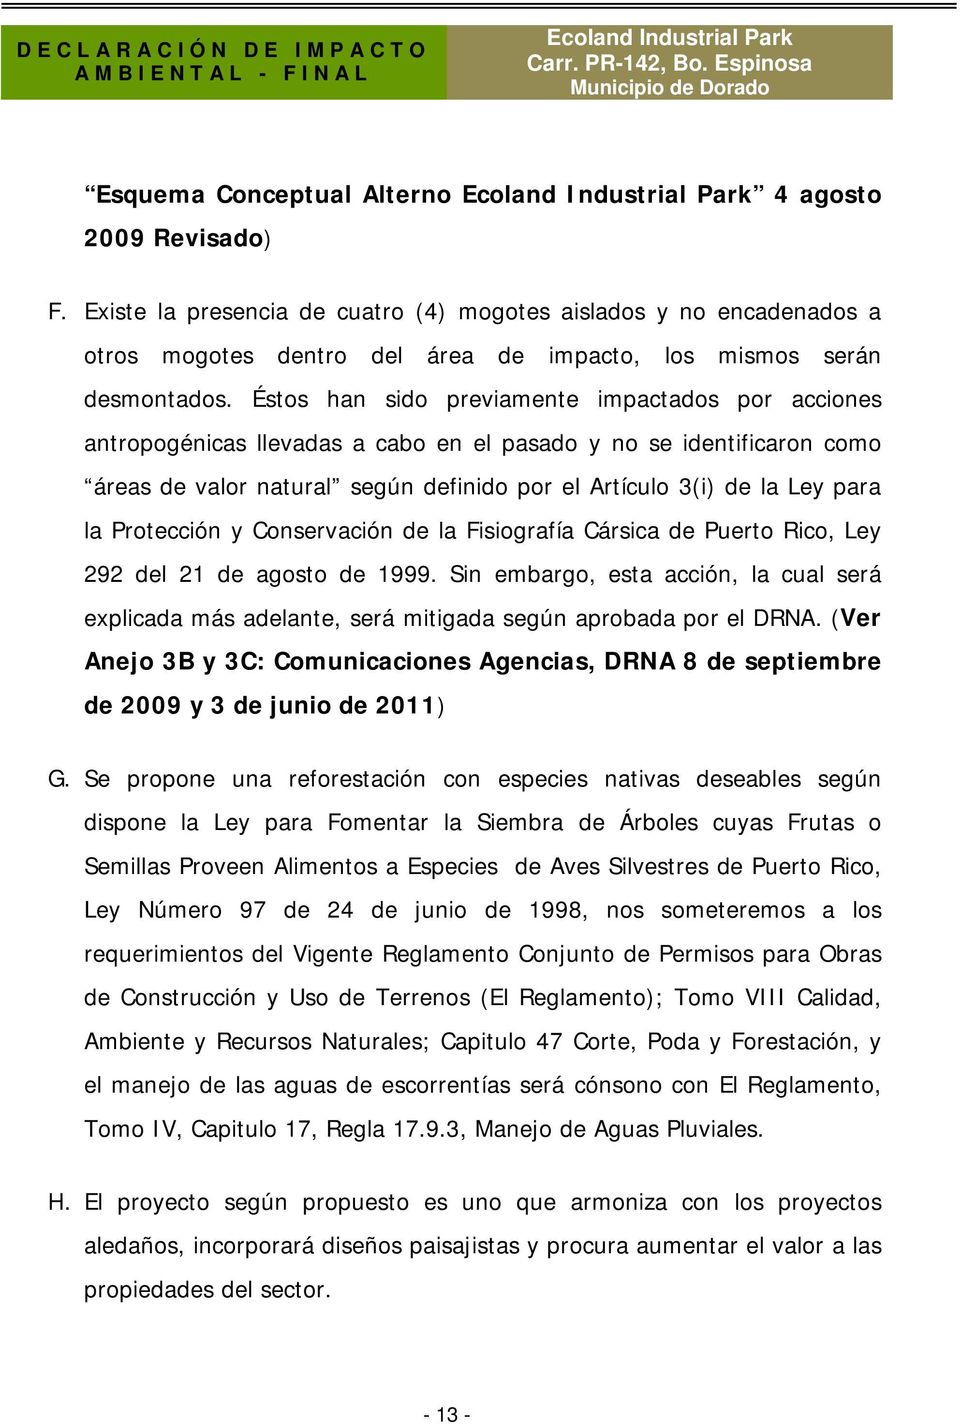 Protección y Conservación de la Fisiografía Cársica de Puerto Rico, Ley 292 del 21 de agosto de 1999.